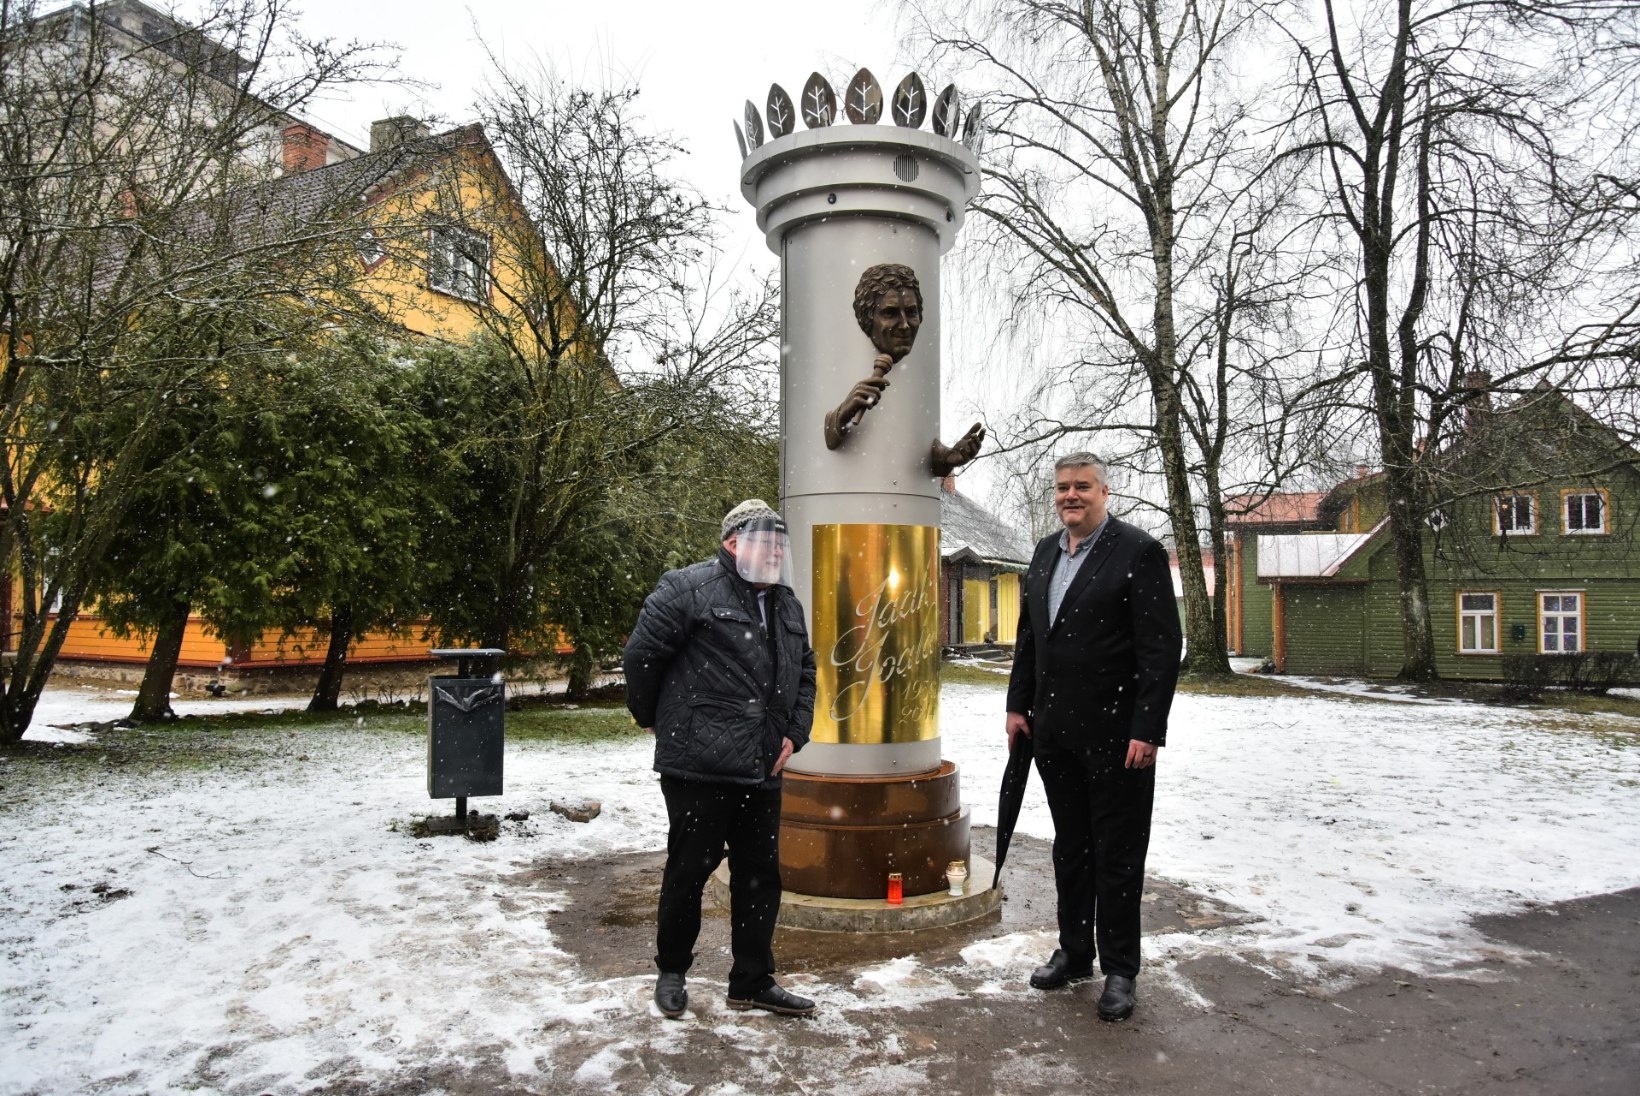 FOTOD JA VIDEO | Viljandis avati Jaak Joala skulptuur